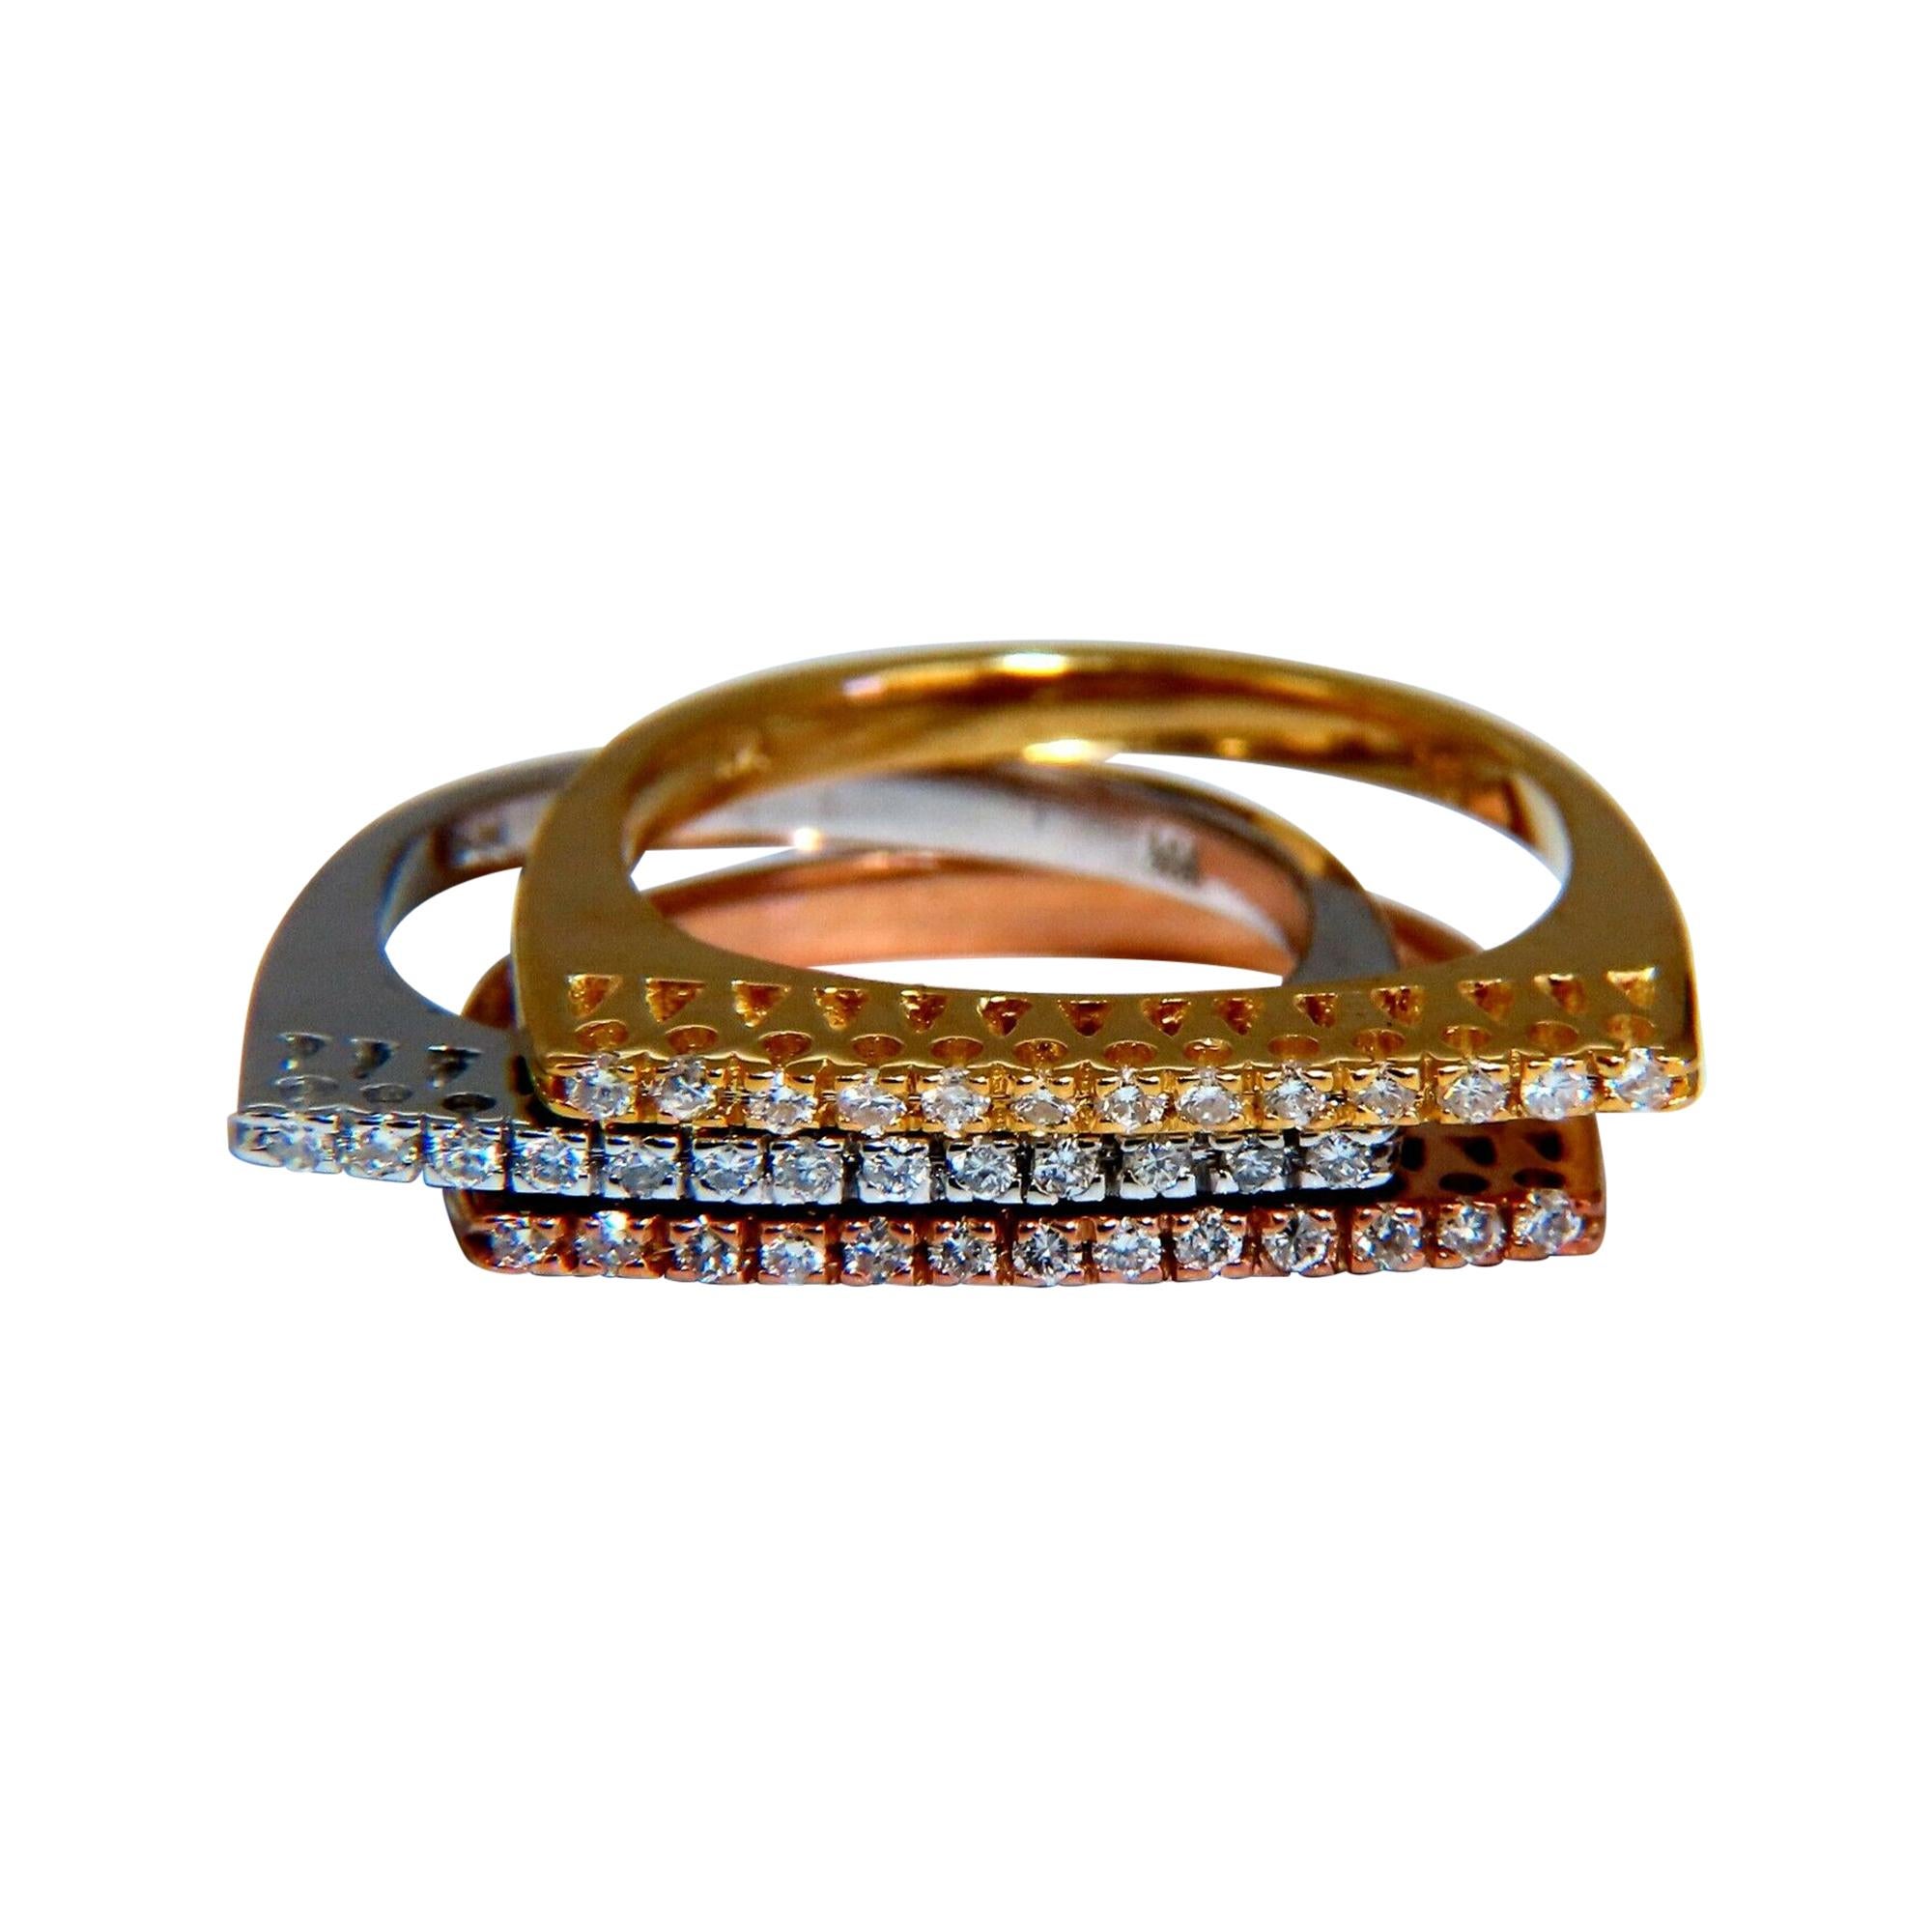 Anneaux empilables en or 14 carats avec diamants naturels de 0,75 carat, style déco minimaliste